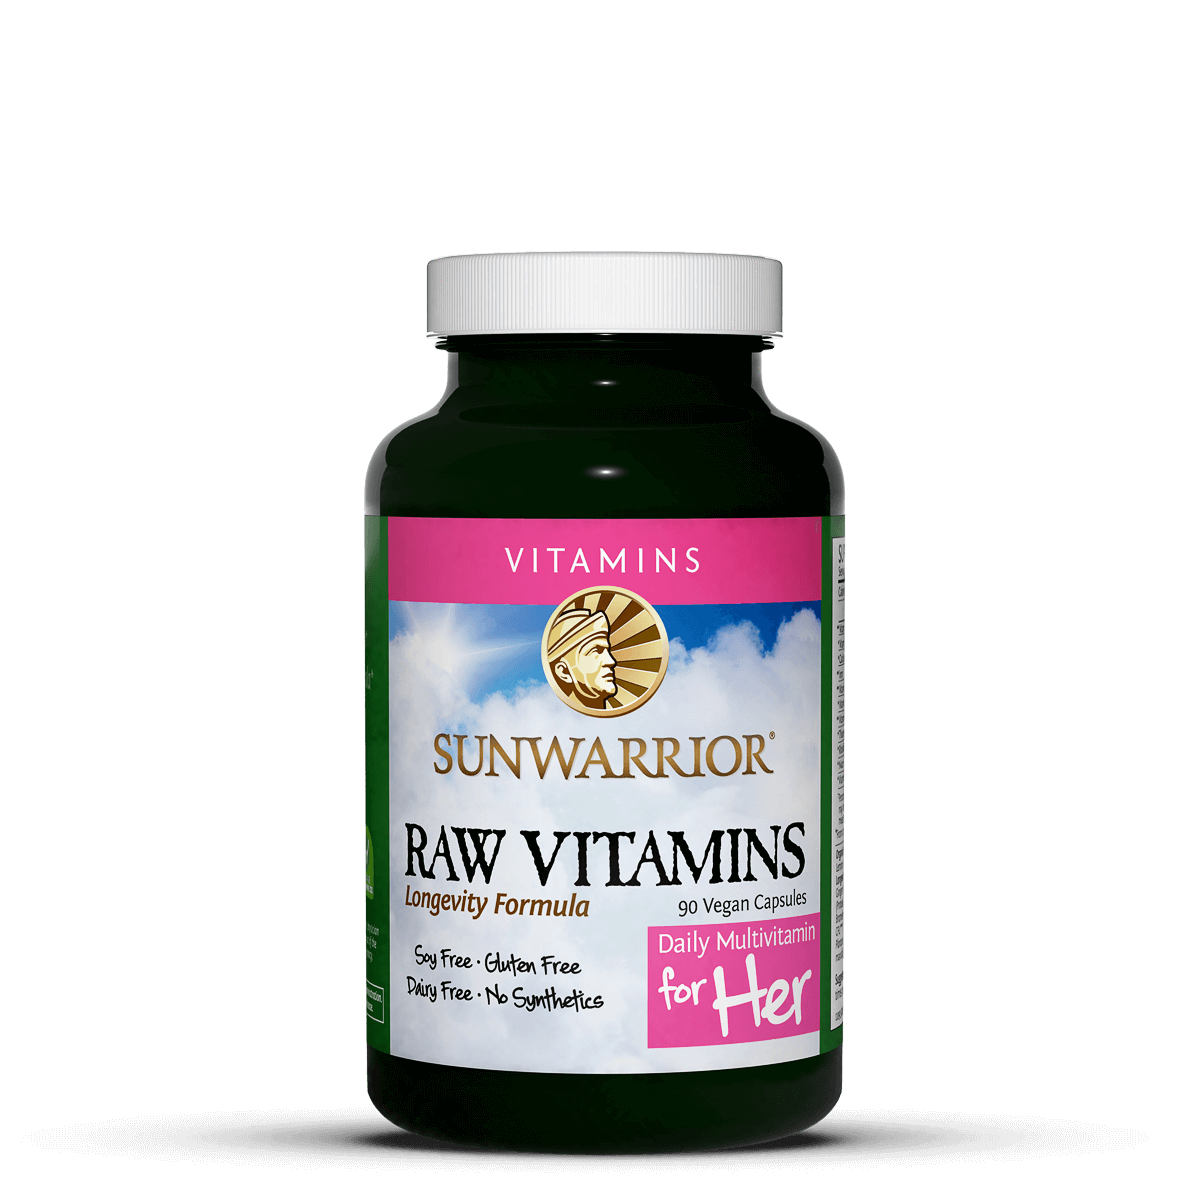 Raw Vitamins